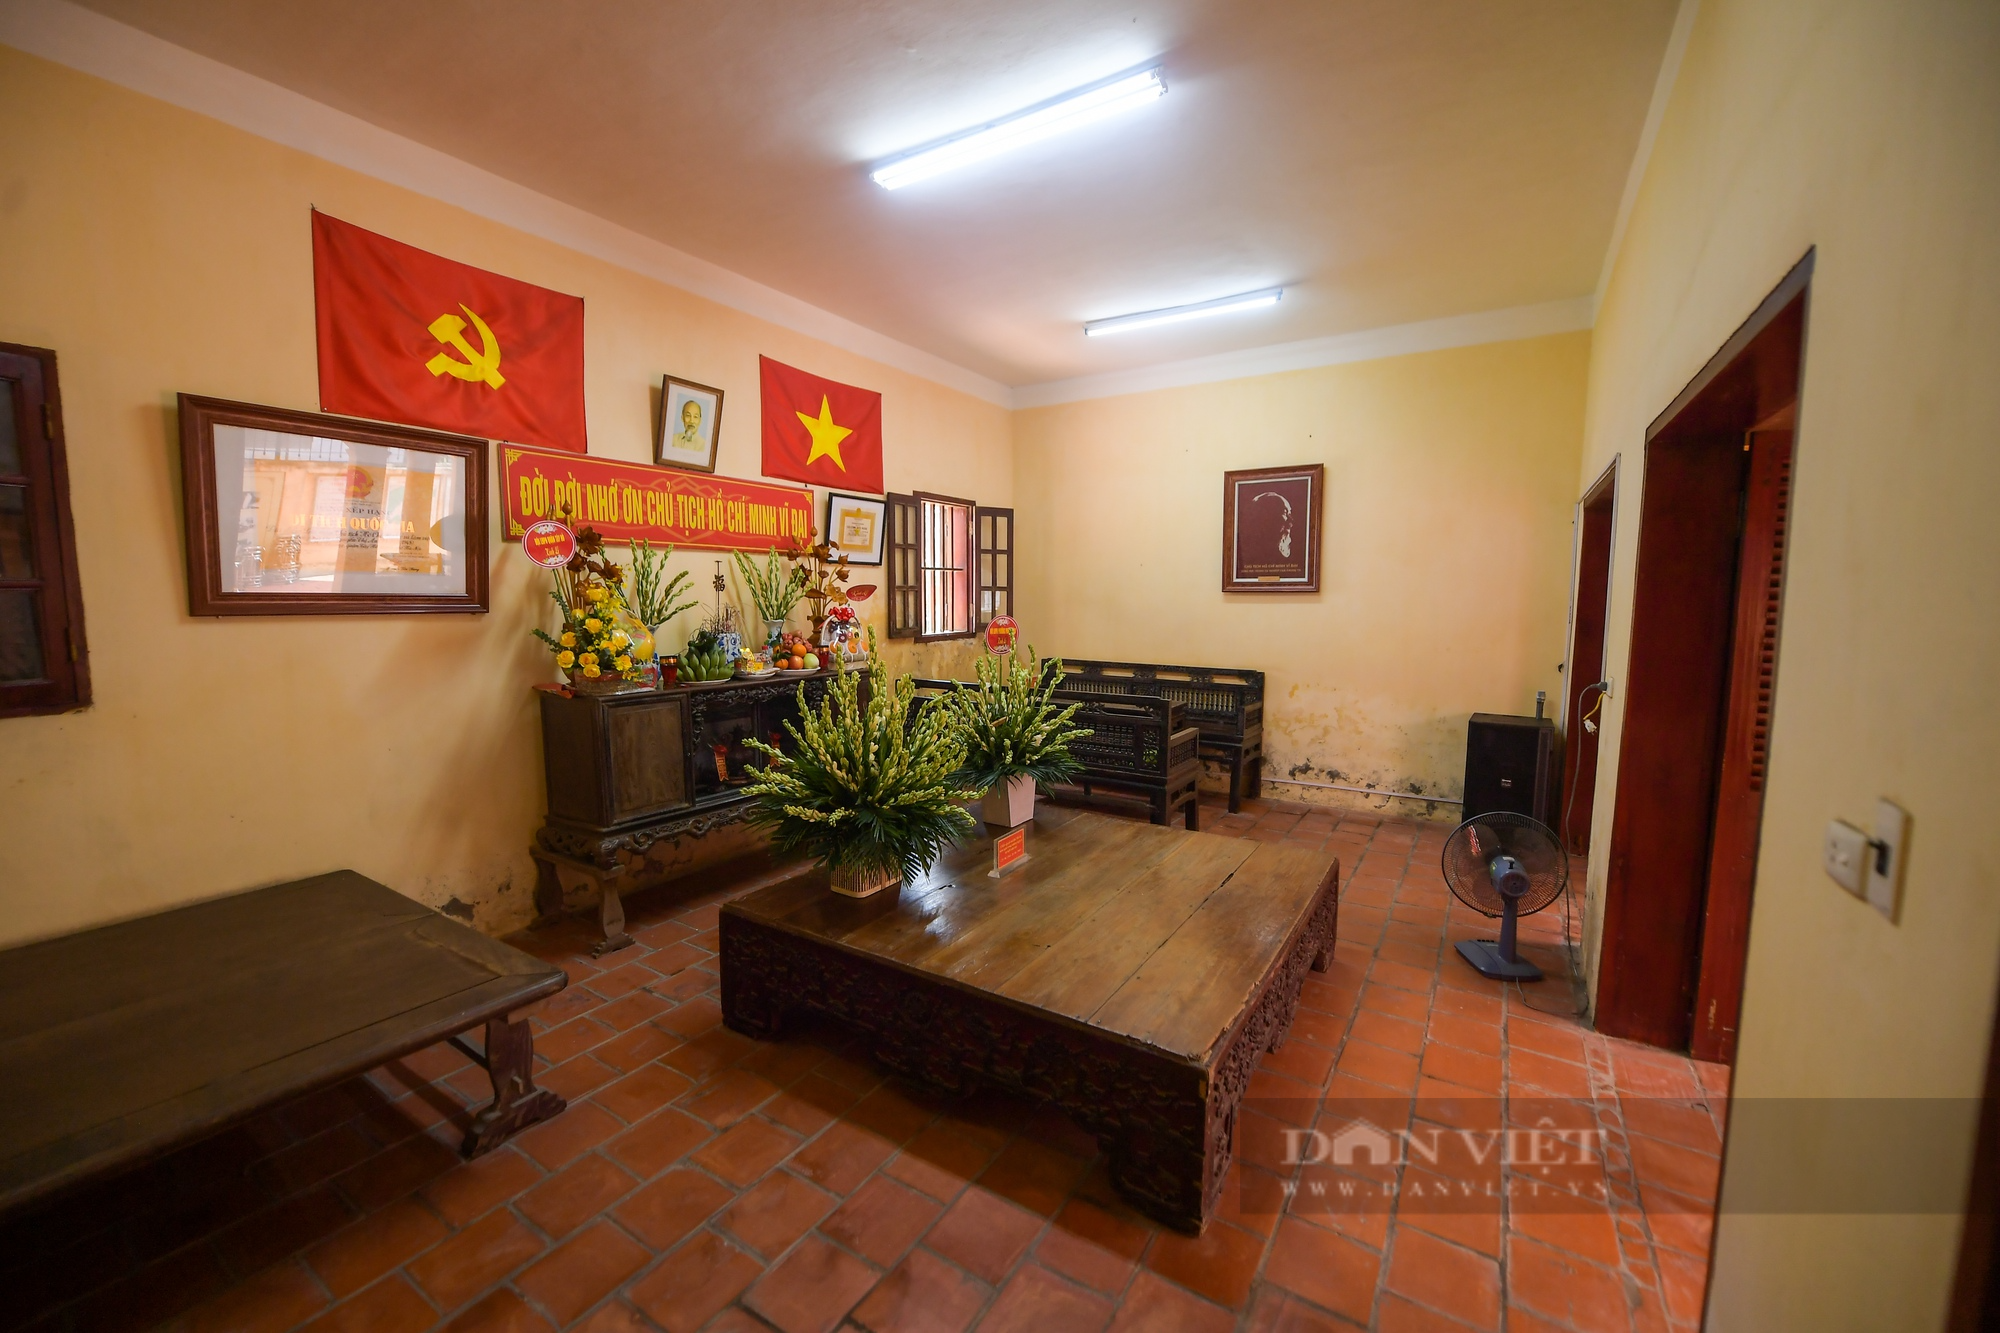 Bên trong căn nhà Bác Hồ từng ở tại Hà Nội, sau khi trở về từ chiến khu Việt Bắc - Ảnh 6.